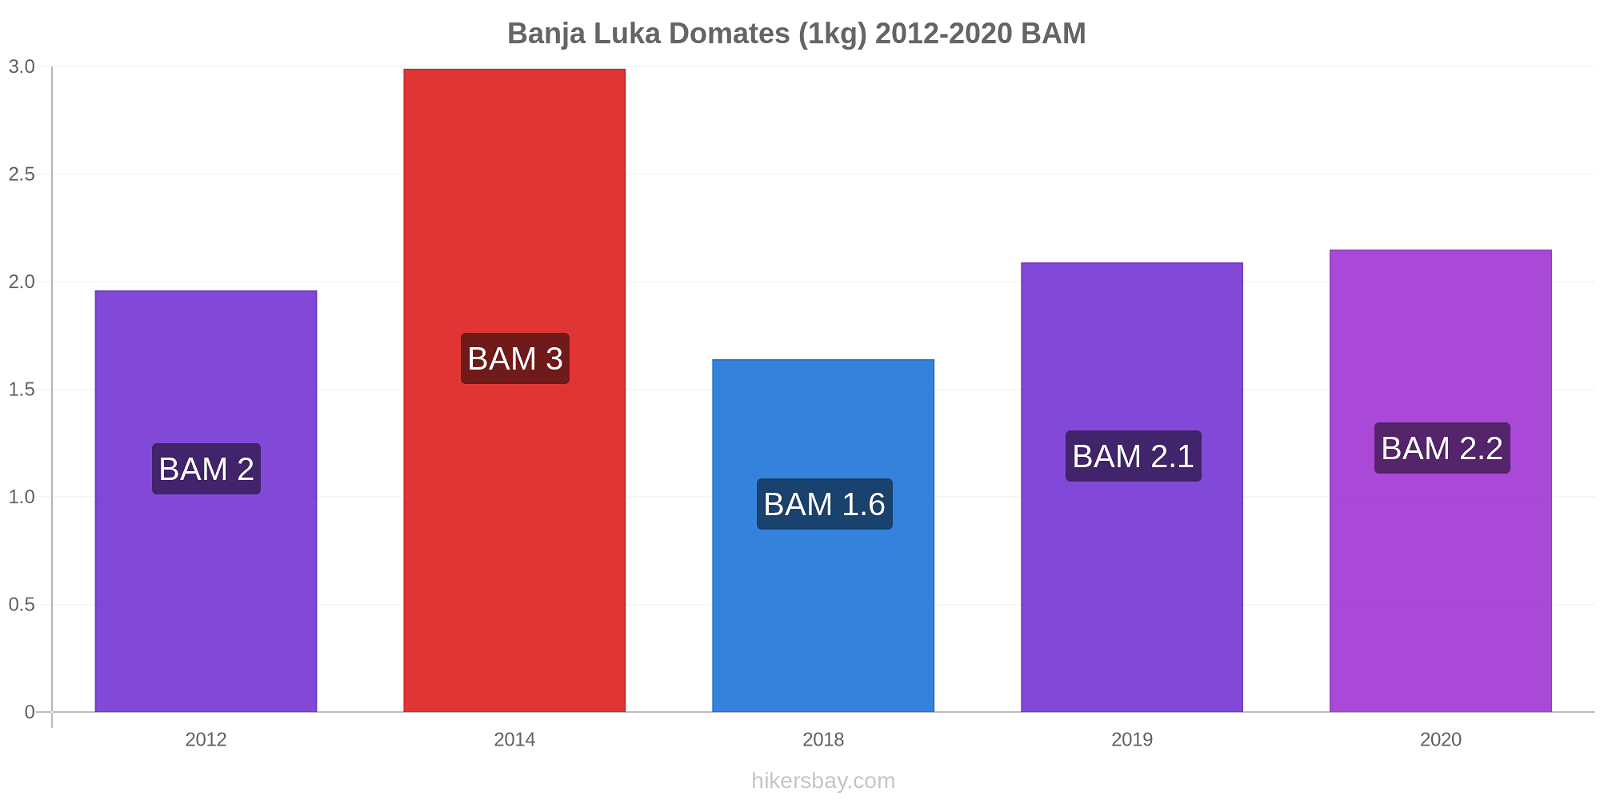 Banja Luka fiyat değişiklikleri Domates (1kg) hikersbay.com